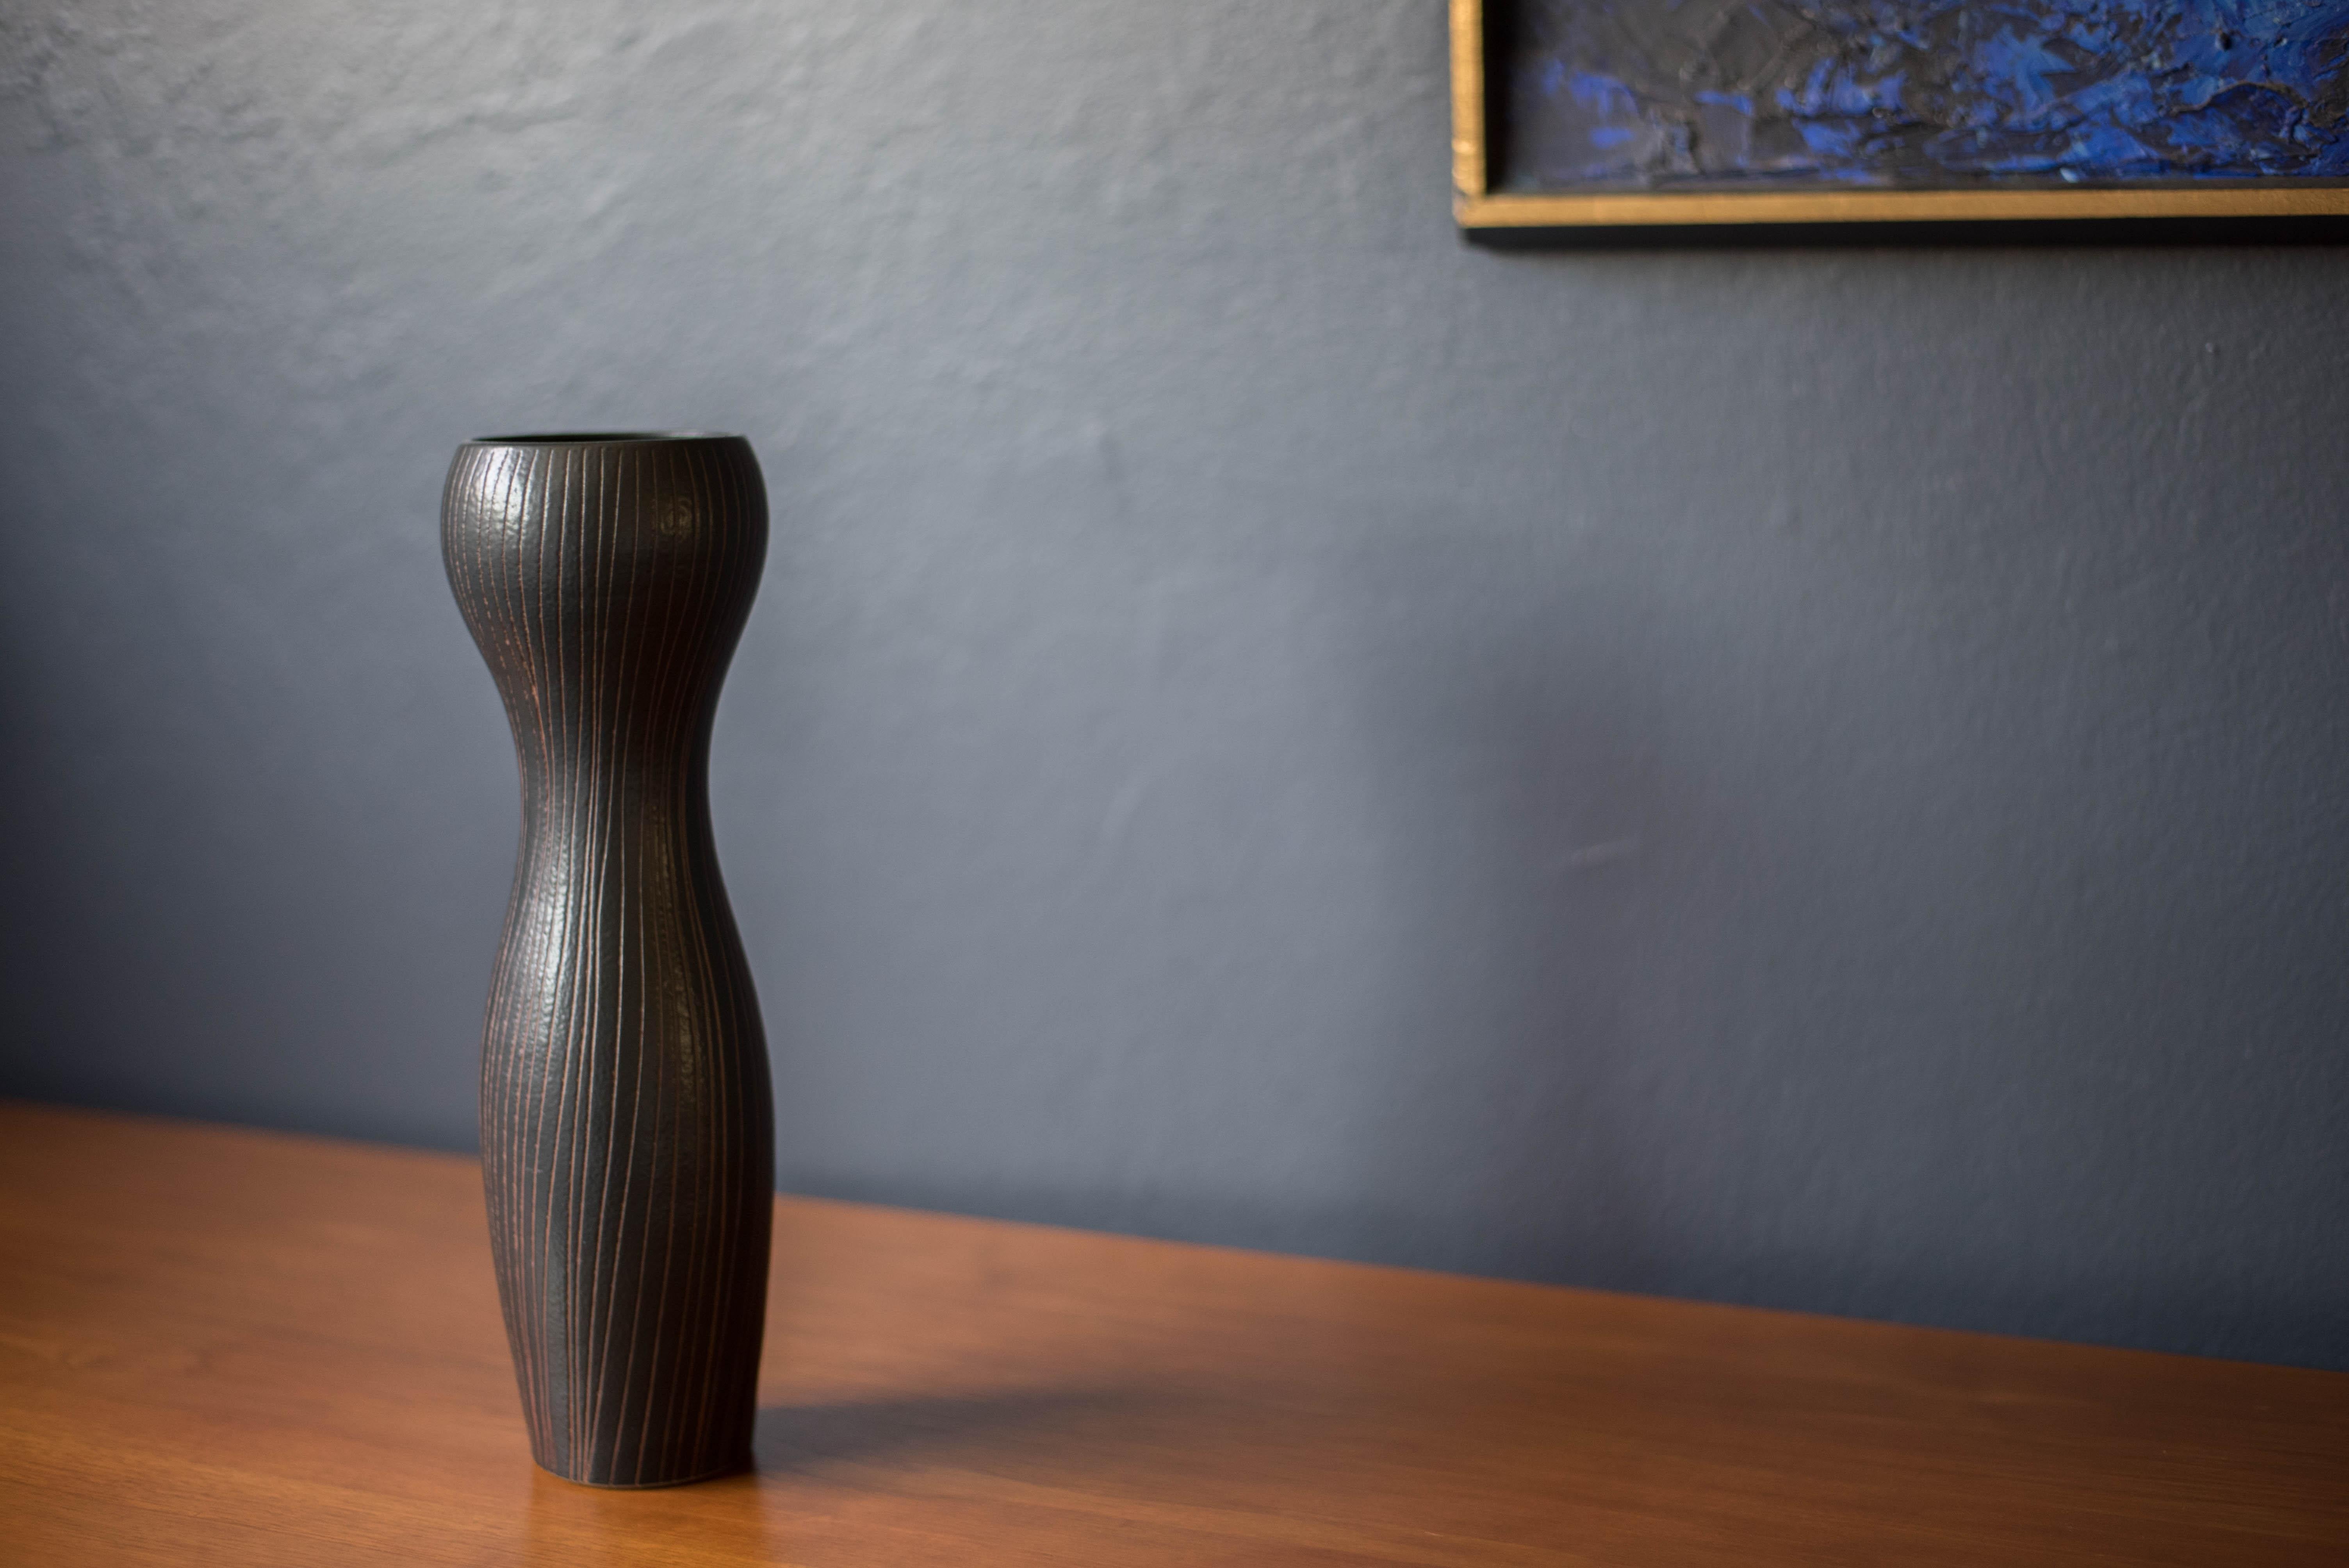 Vase en céramique de style moderne du milieu du siècle par Otagiri Mercantile Company, vers les années 1960. Ce récipient unique présente une forme sculpturale en grès avec des incisions décoratives naturelles dans une finition noire mate.